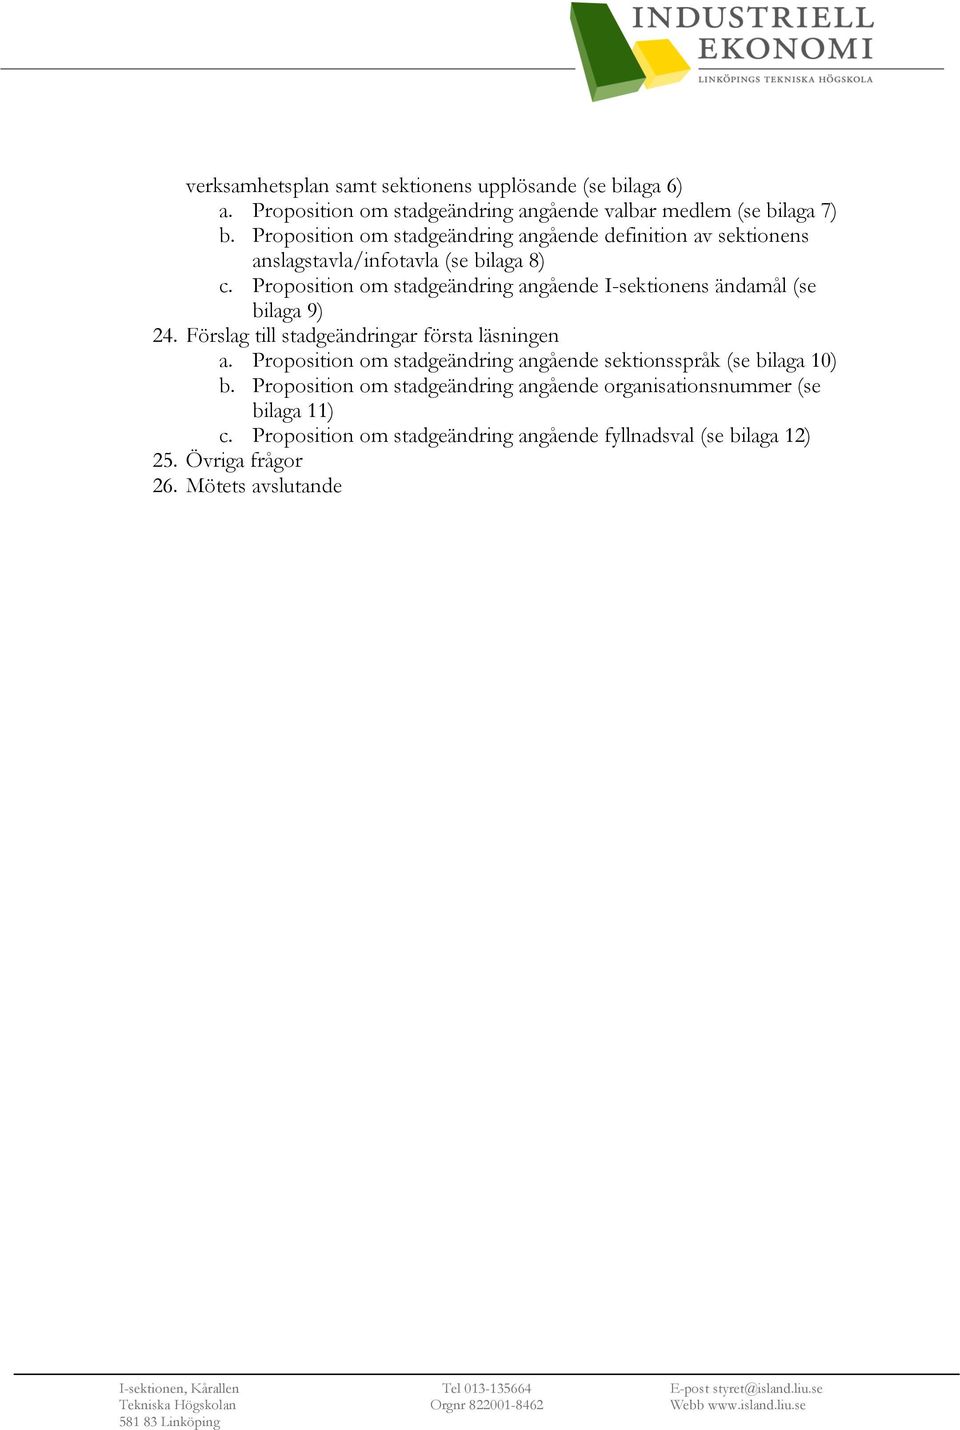 Proposition om stadgeändring angående I-sektionens ändamål (se bilaga 9) 24. Förslag till stadgeändringar första läsningen a.